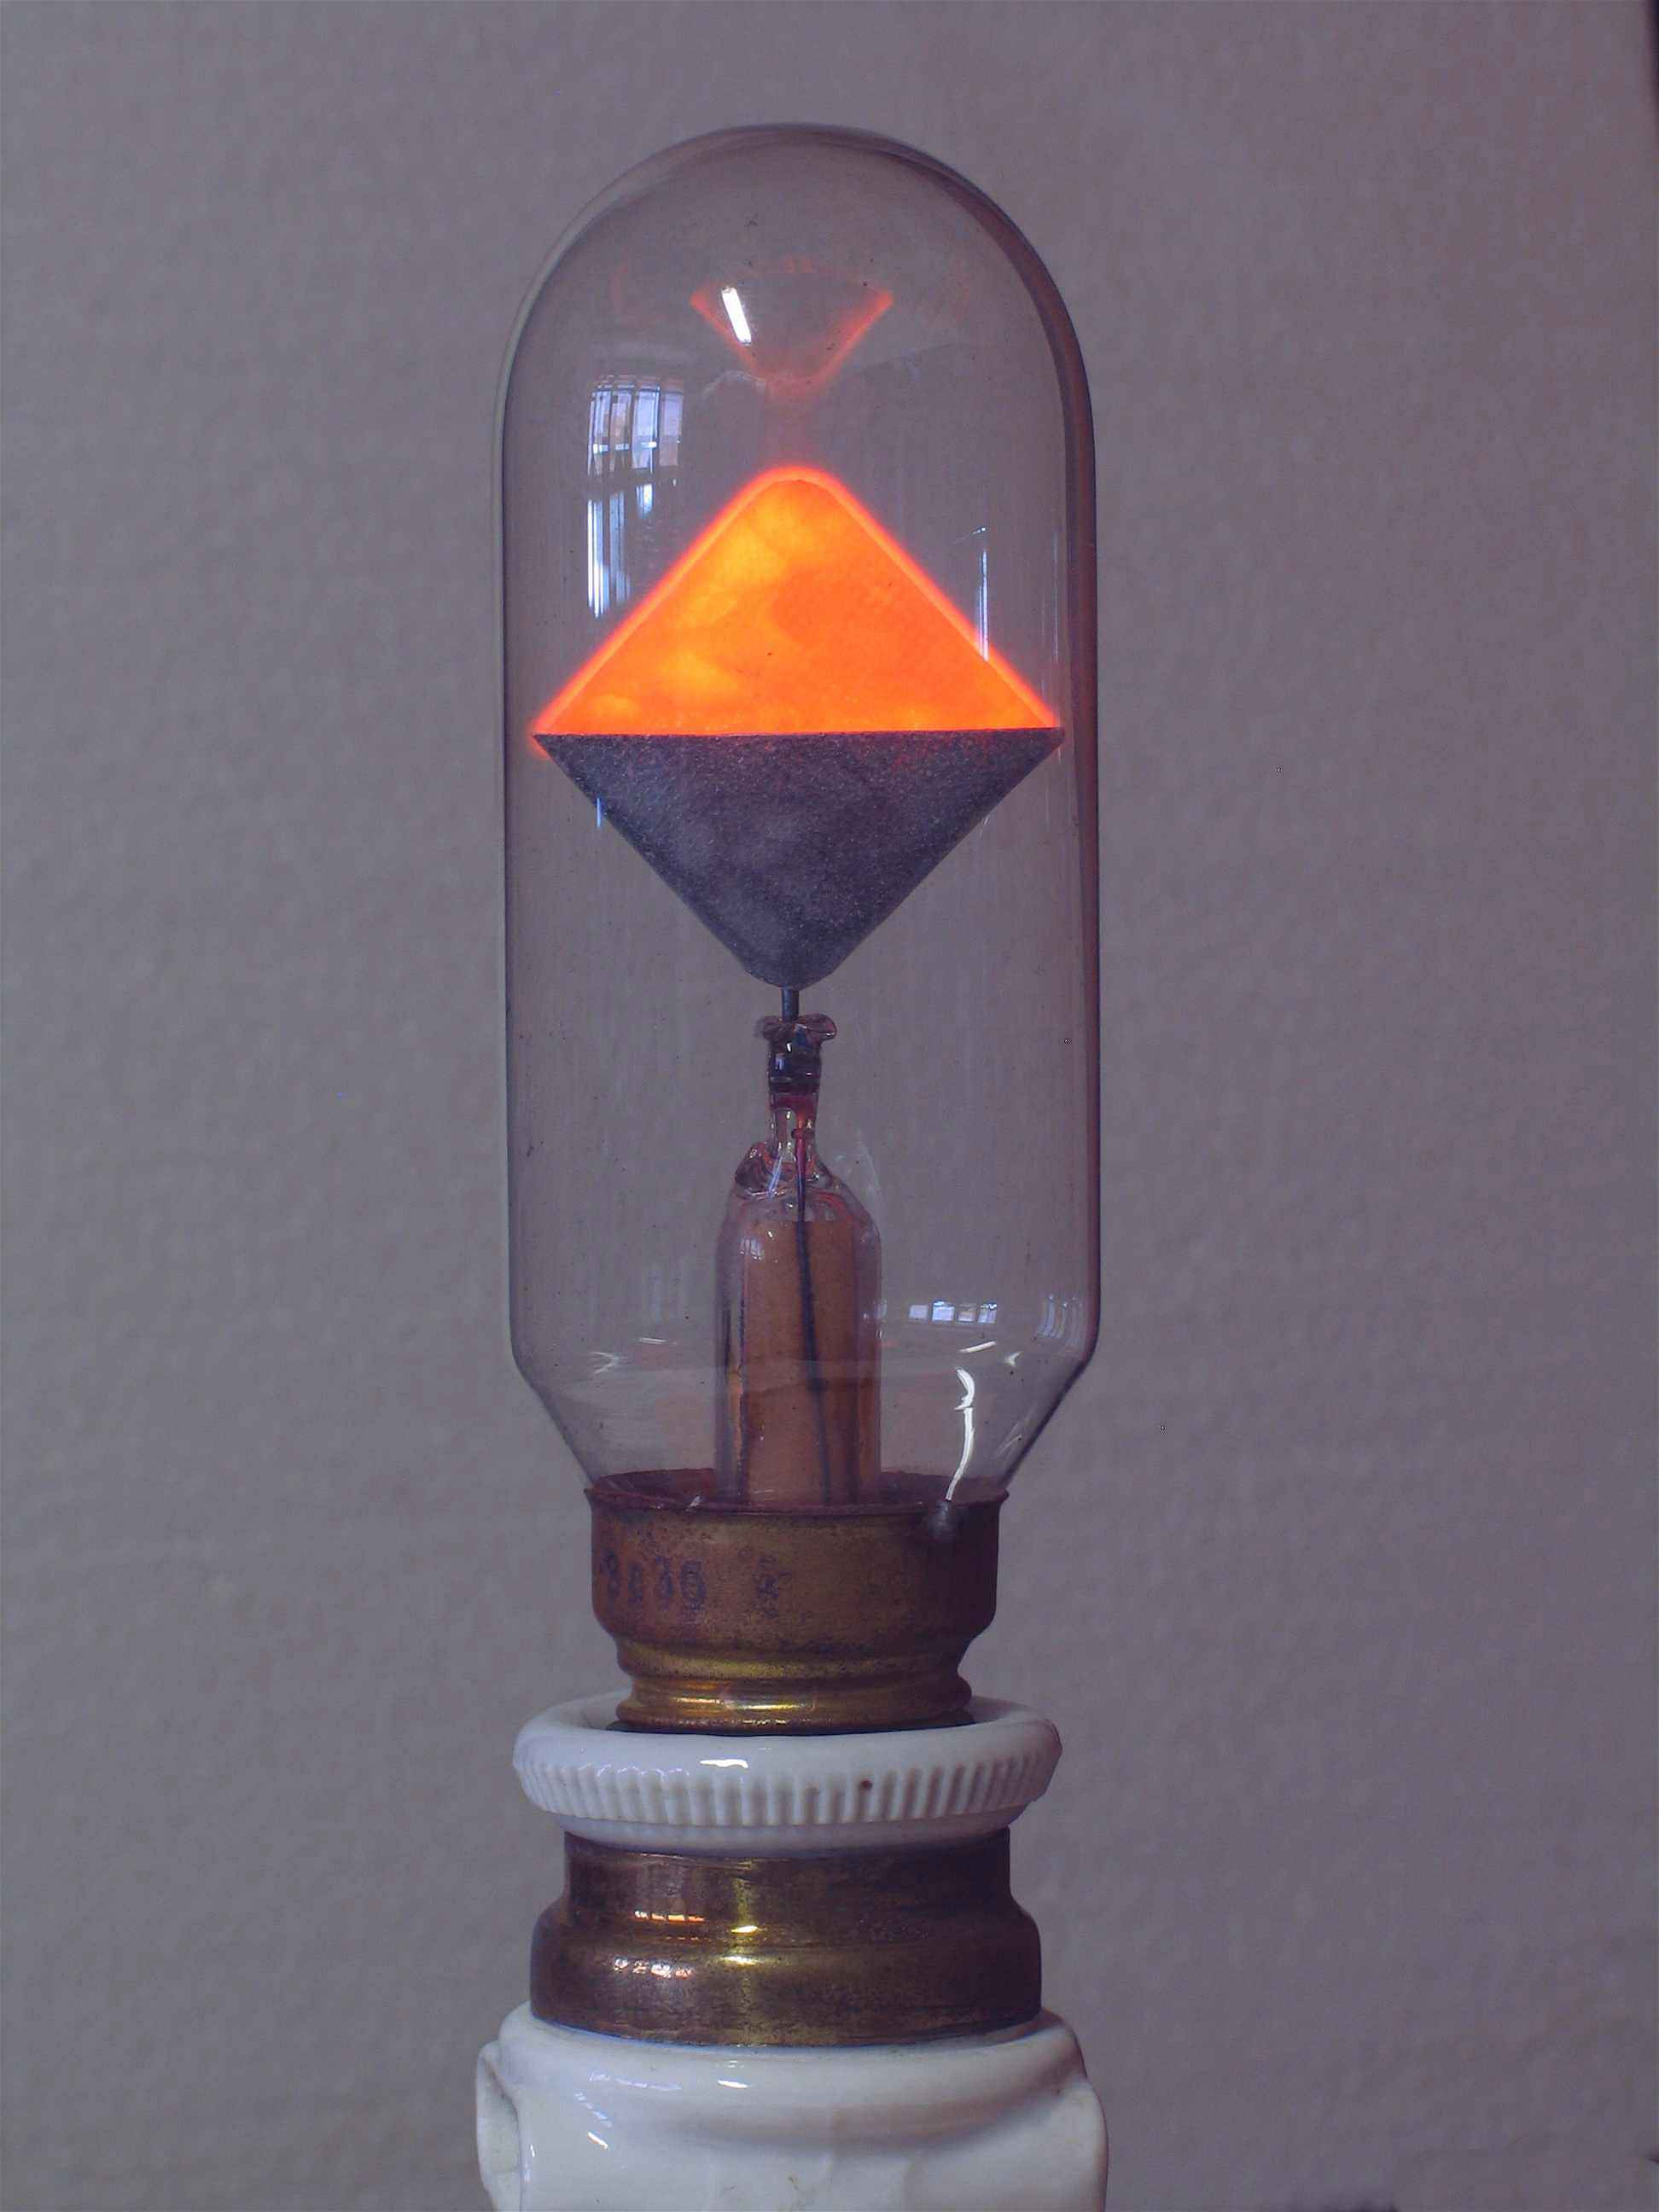 Lampes à décharge dans le néon
(deux triangles)